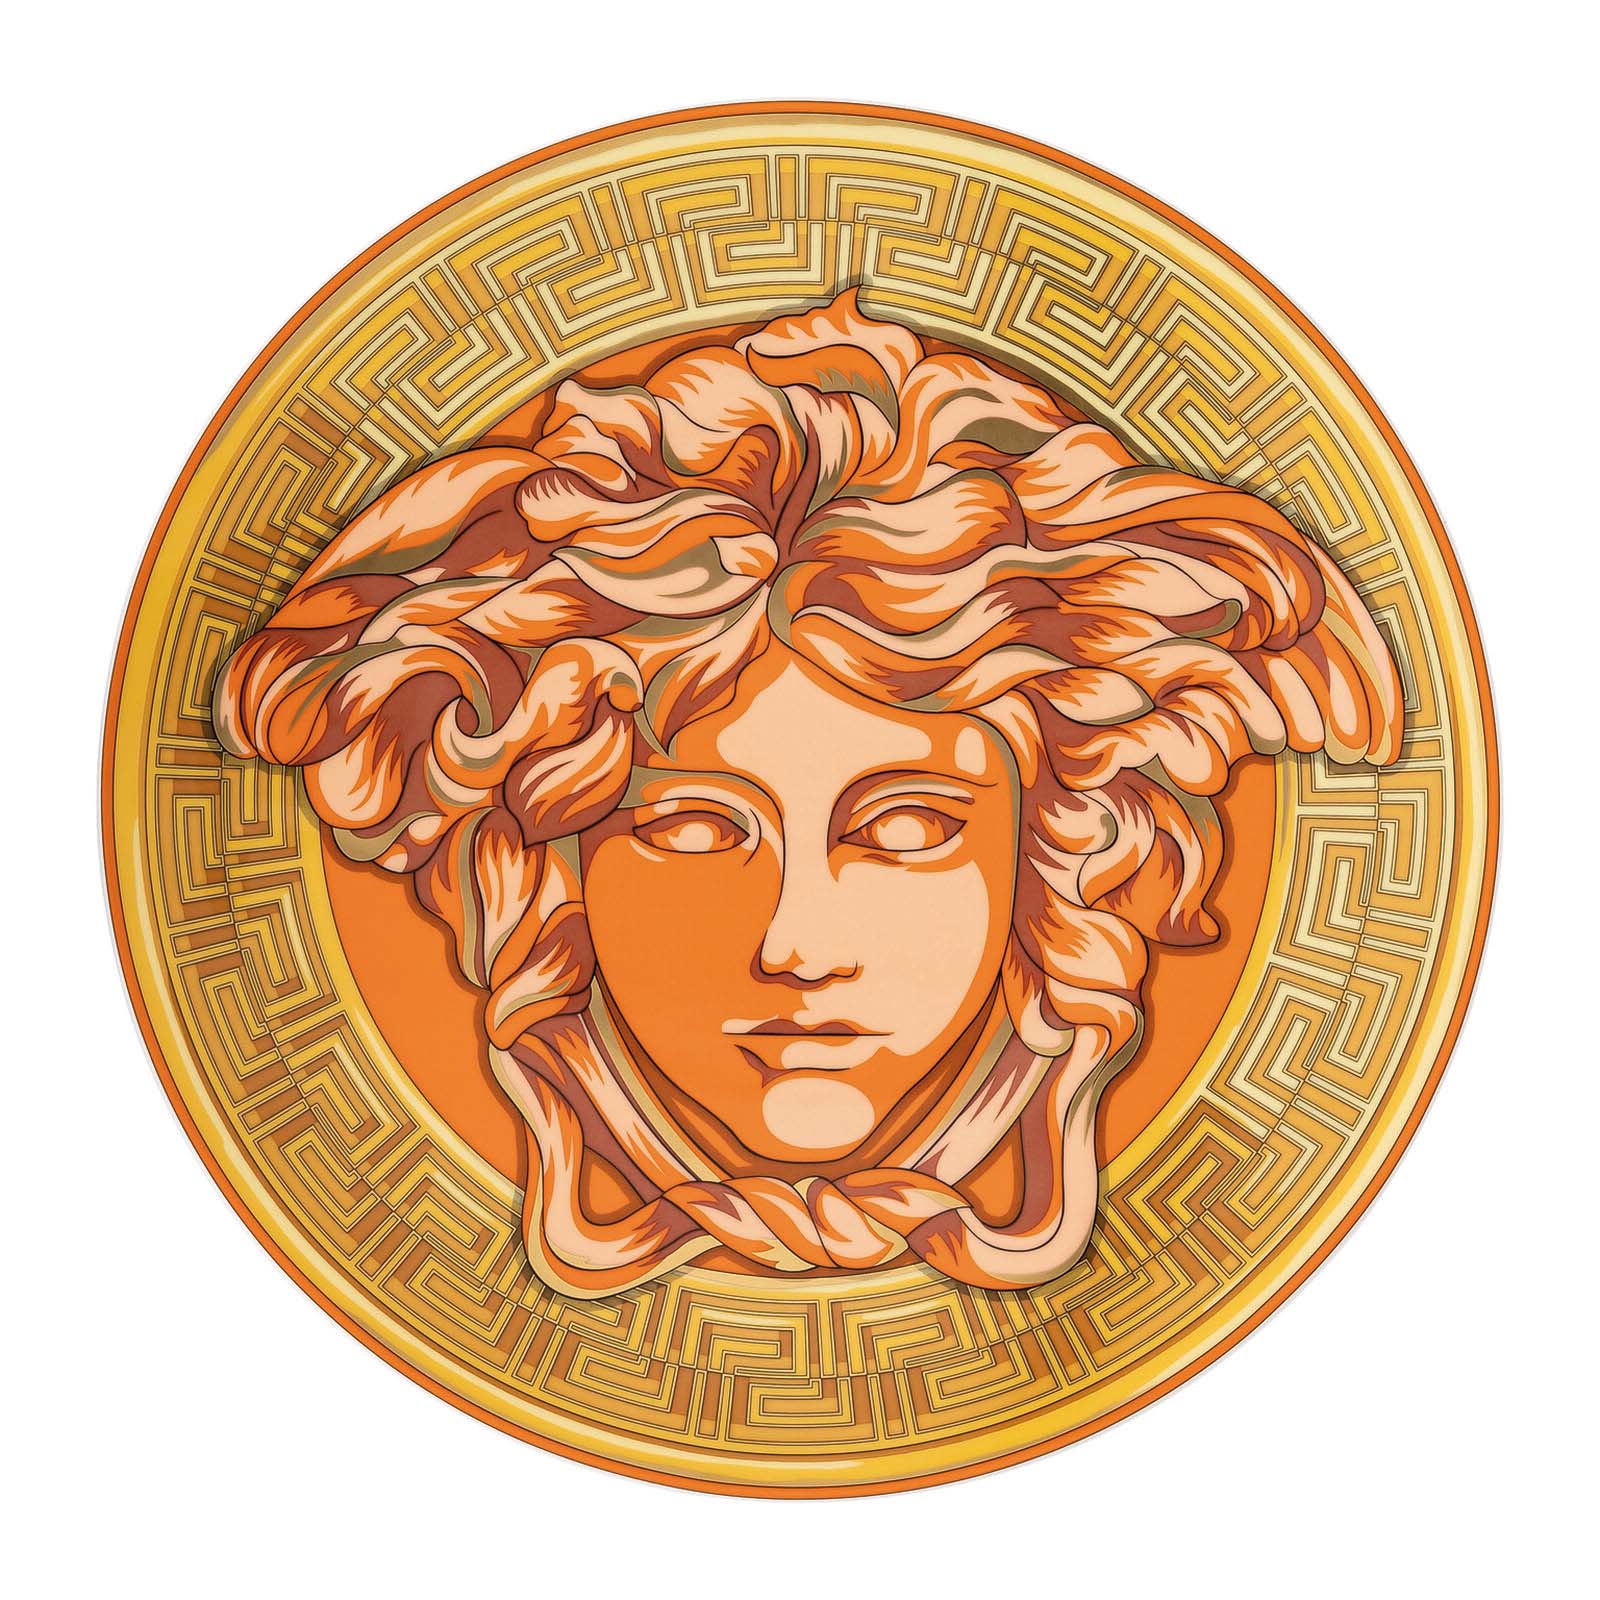  MEDUSA AMPLIFIED橙色硬币盘的图片
